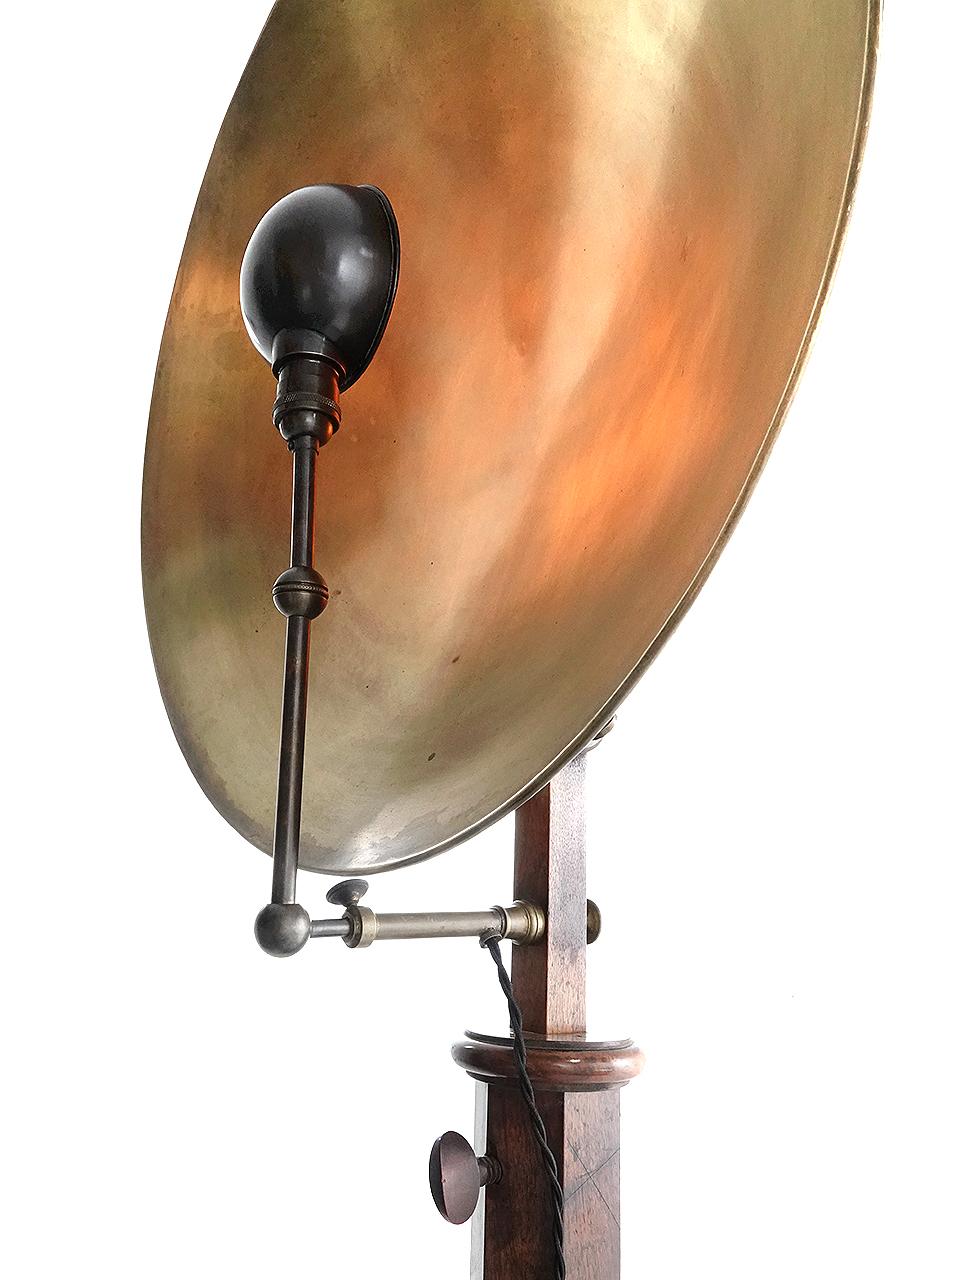 Il s'agit d'un dispositif expérimental extrêmement rare, datant du début du XIXe siècle. Cet exemple est configuré comme un simple grand lampadaire réfléchissant et dramatique. À l'origine, il était utilisé pour la recherche d'expériences physiques